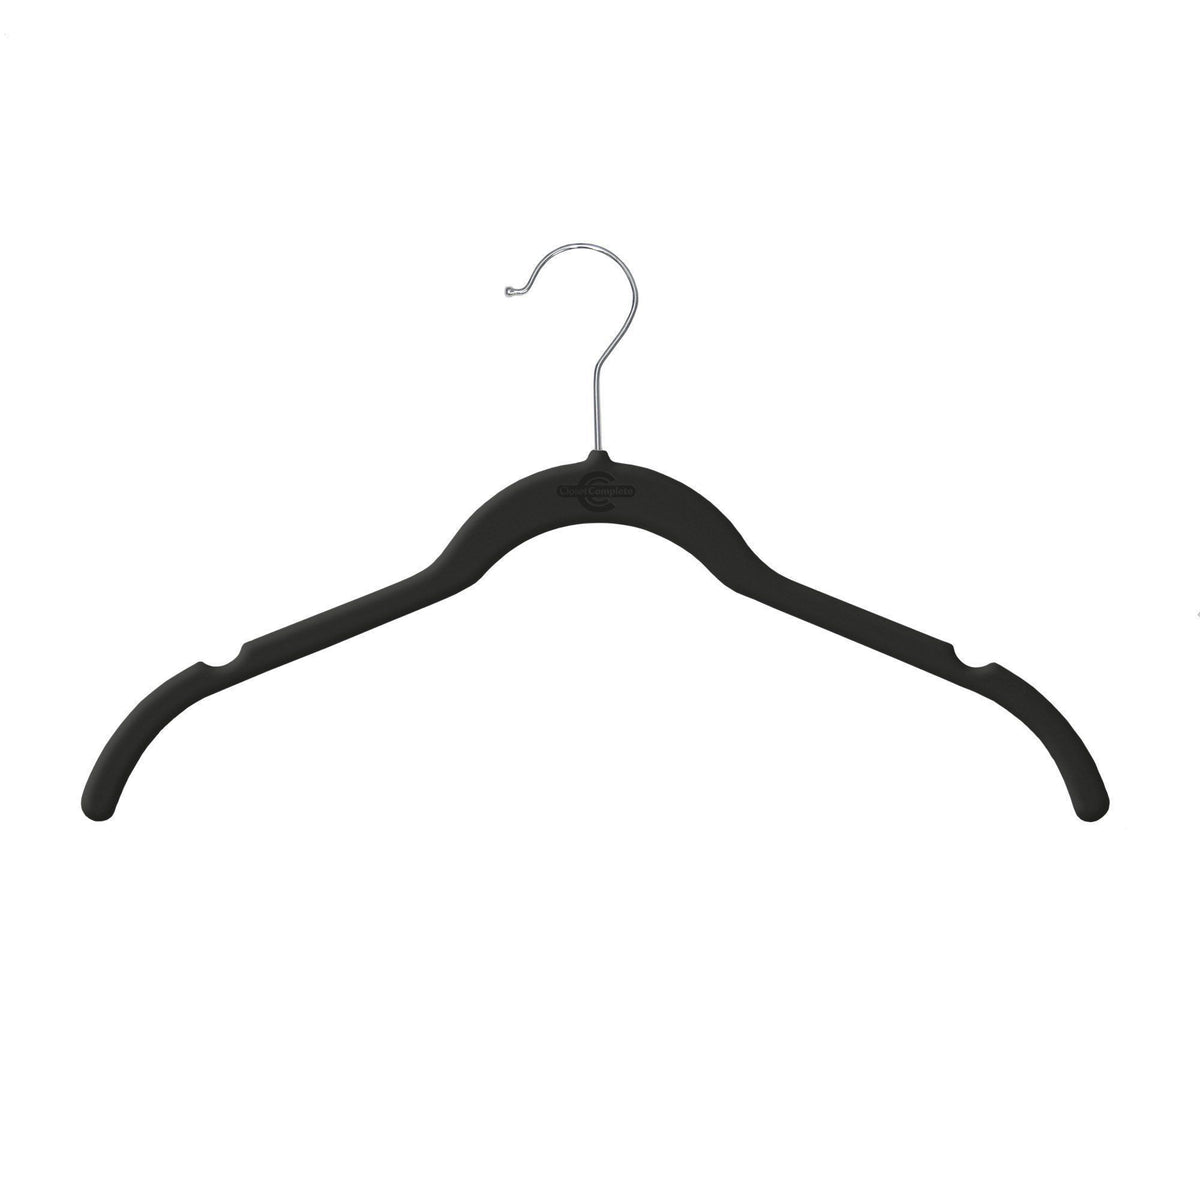 http://www.closetcomplete.com/cdn/shop/products/closet-complete-velvet-hangers-premium-heavyweight-velvet-shirt-dress-hangers-71510-7162887798869_1200x1200.jpg?v=1552516962